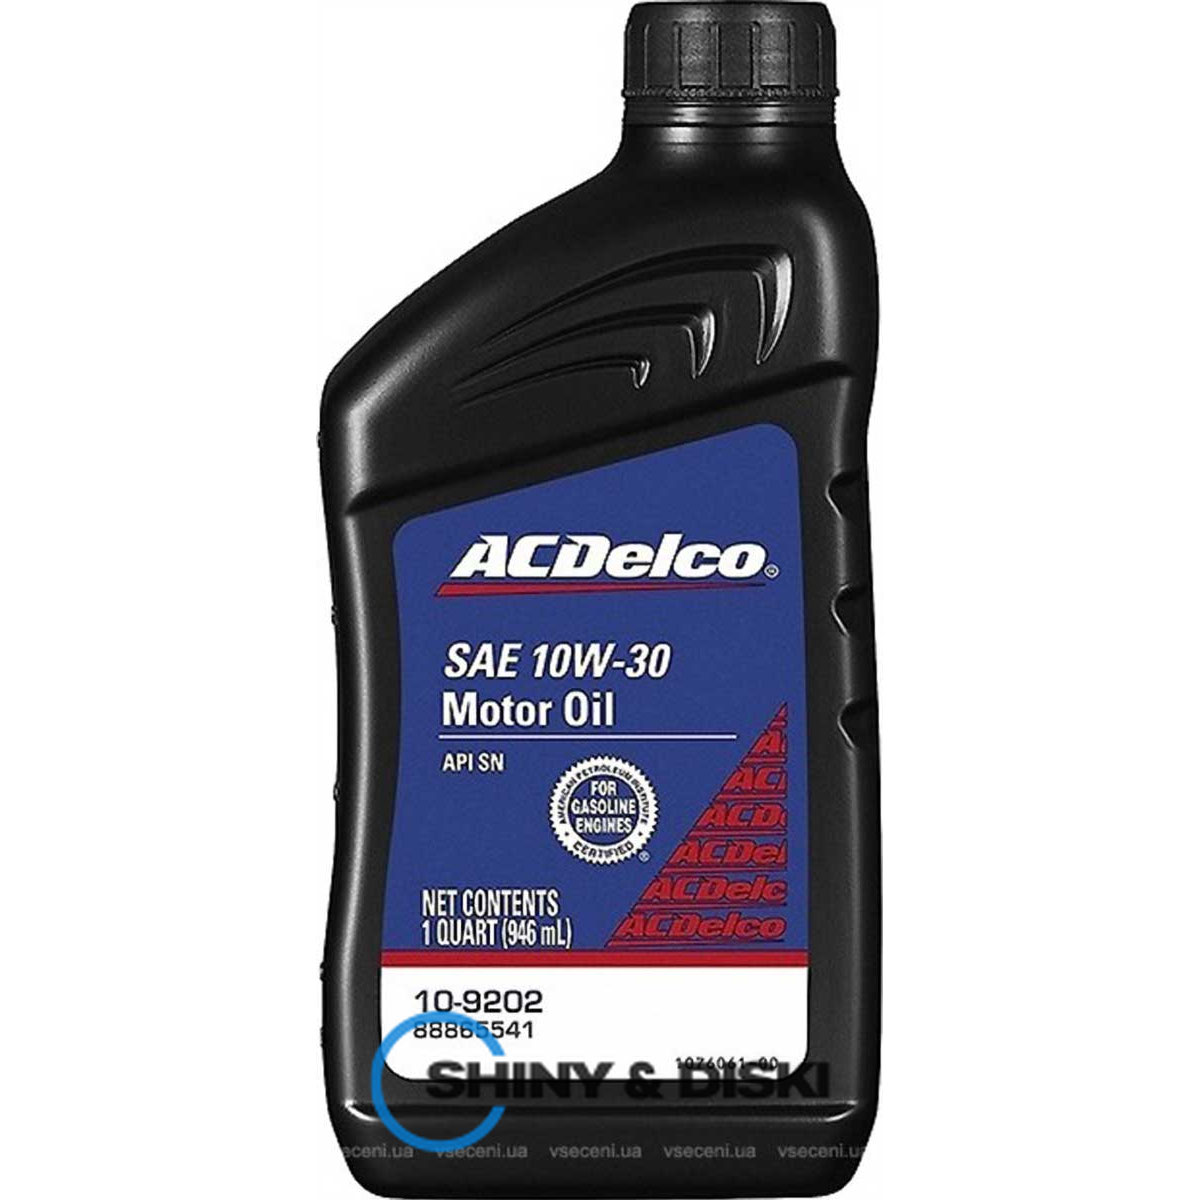 acdelco motor oil 10w-30 (0.946 л)